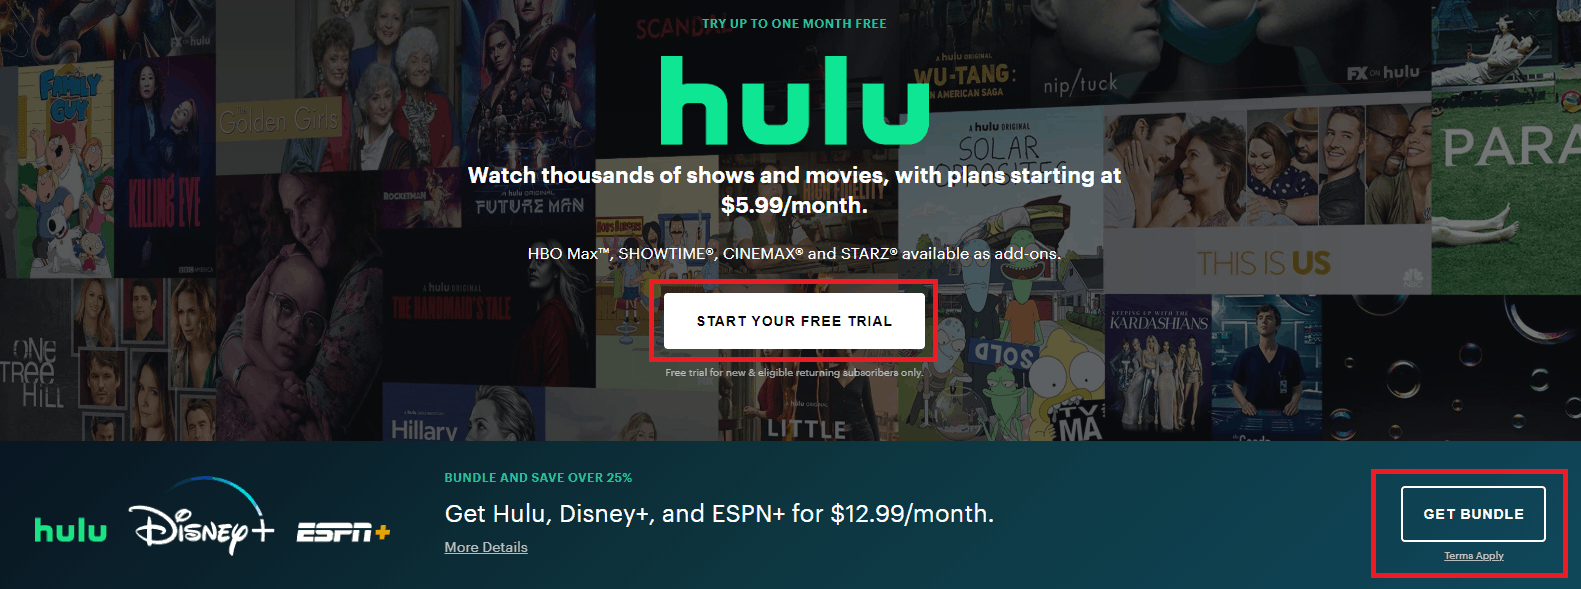 Hulu web interface